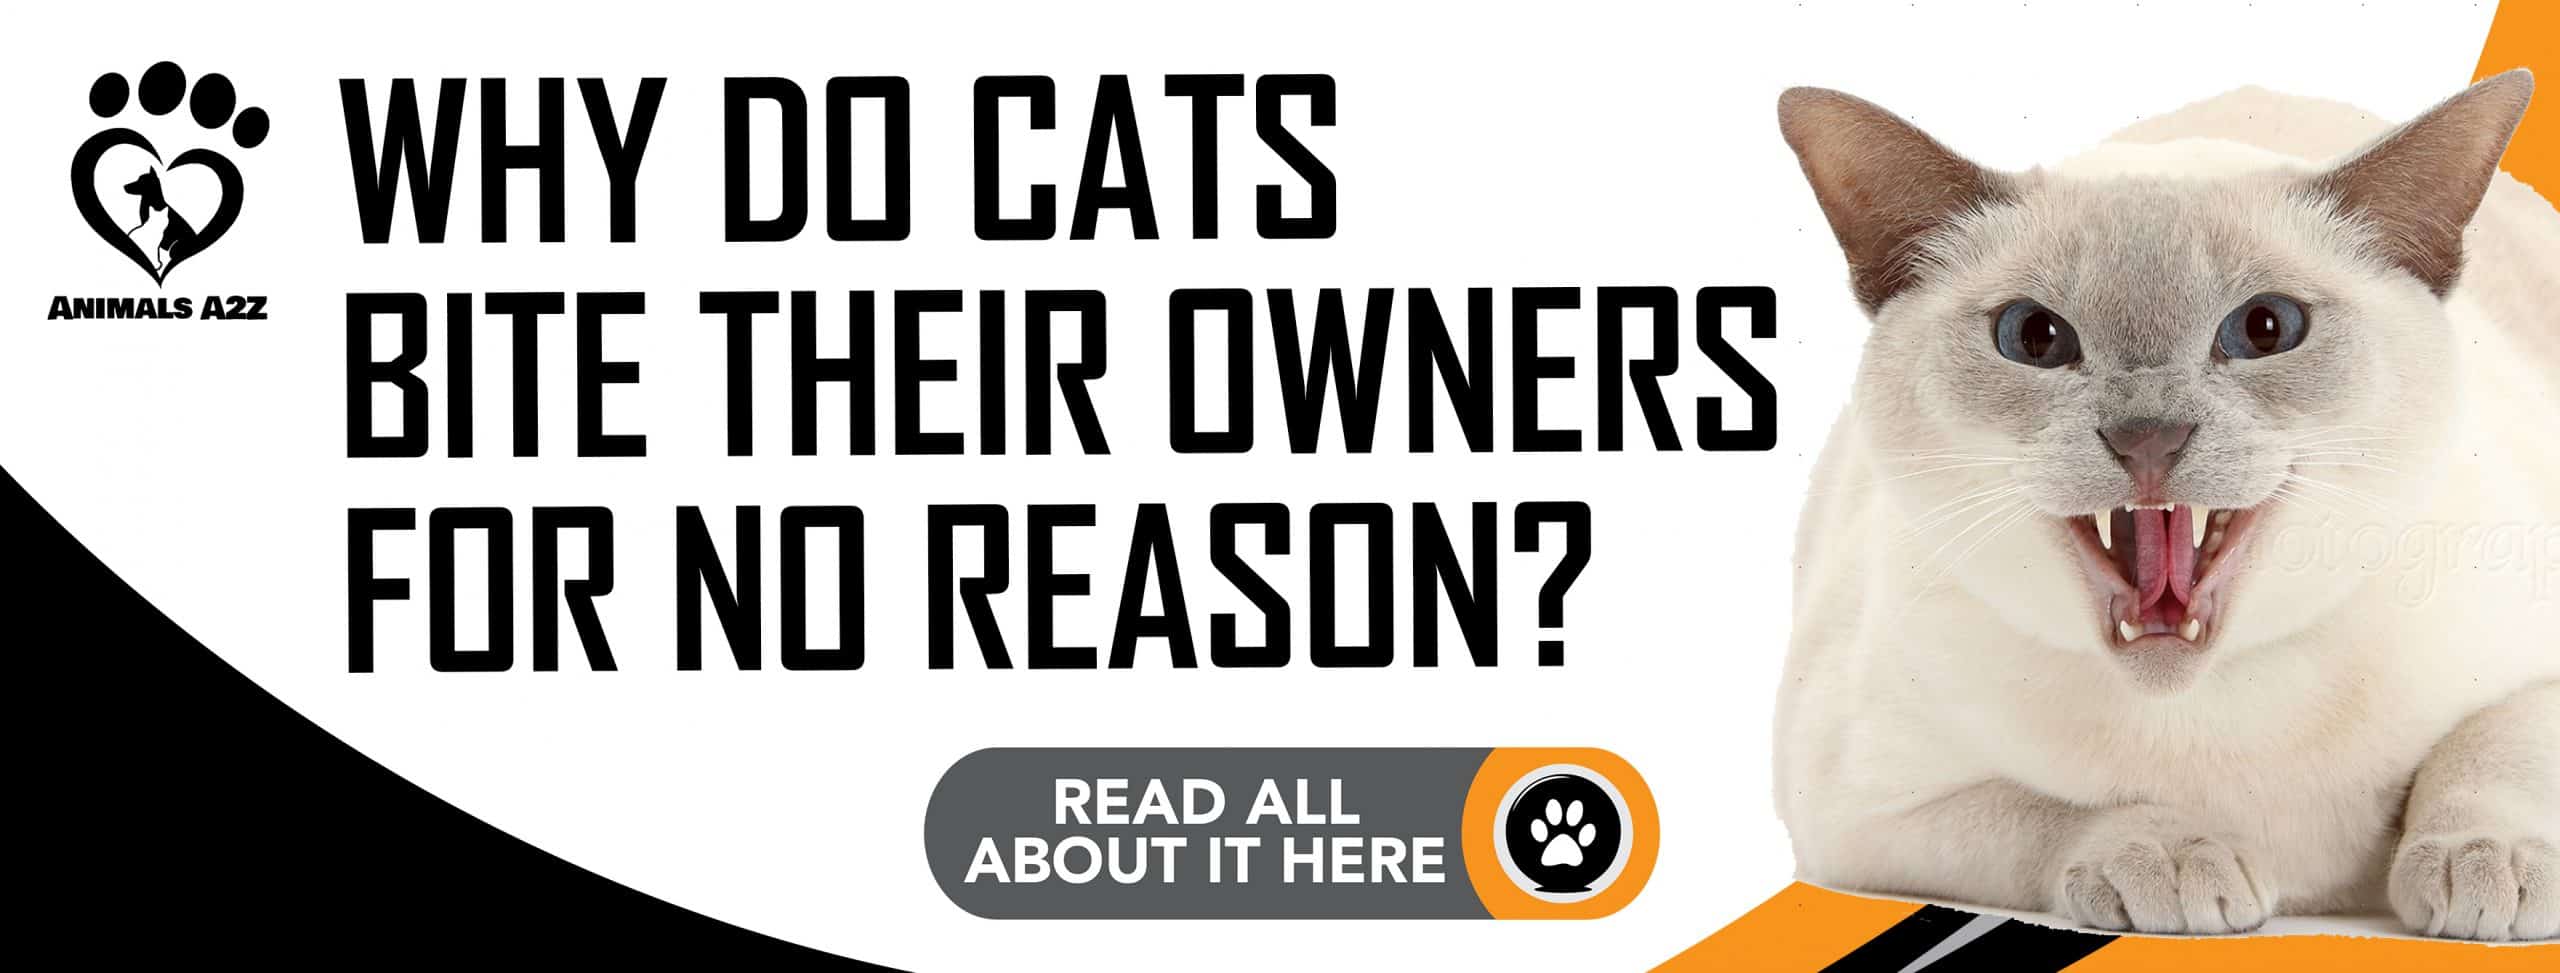 Warum beißen Katzen ihre Besitzer ohne Grund?